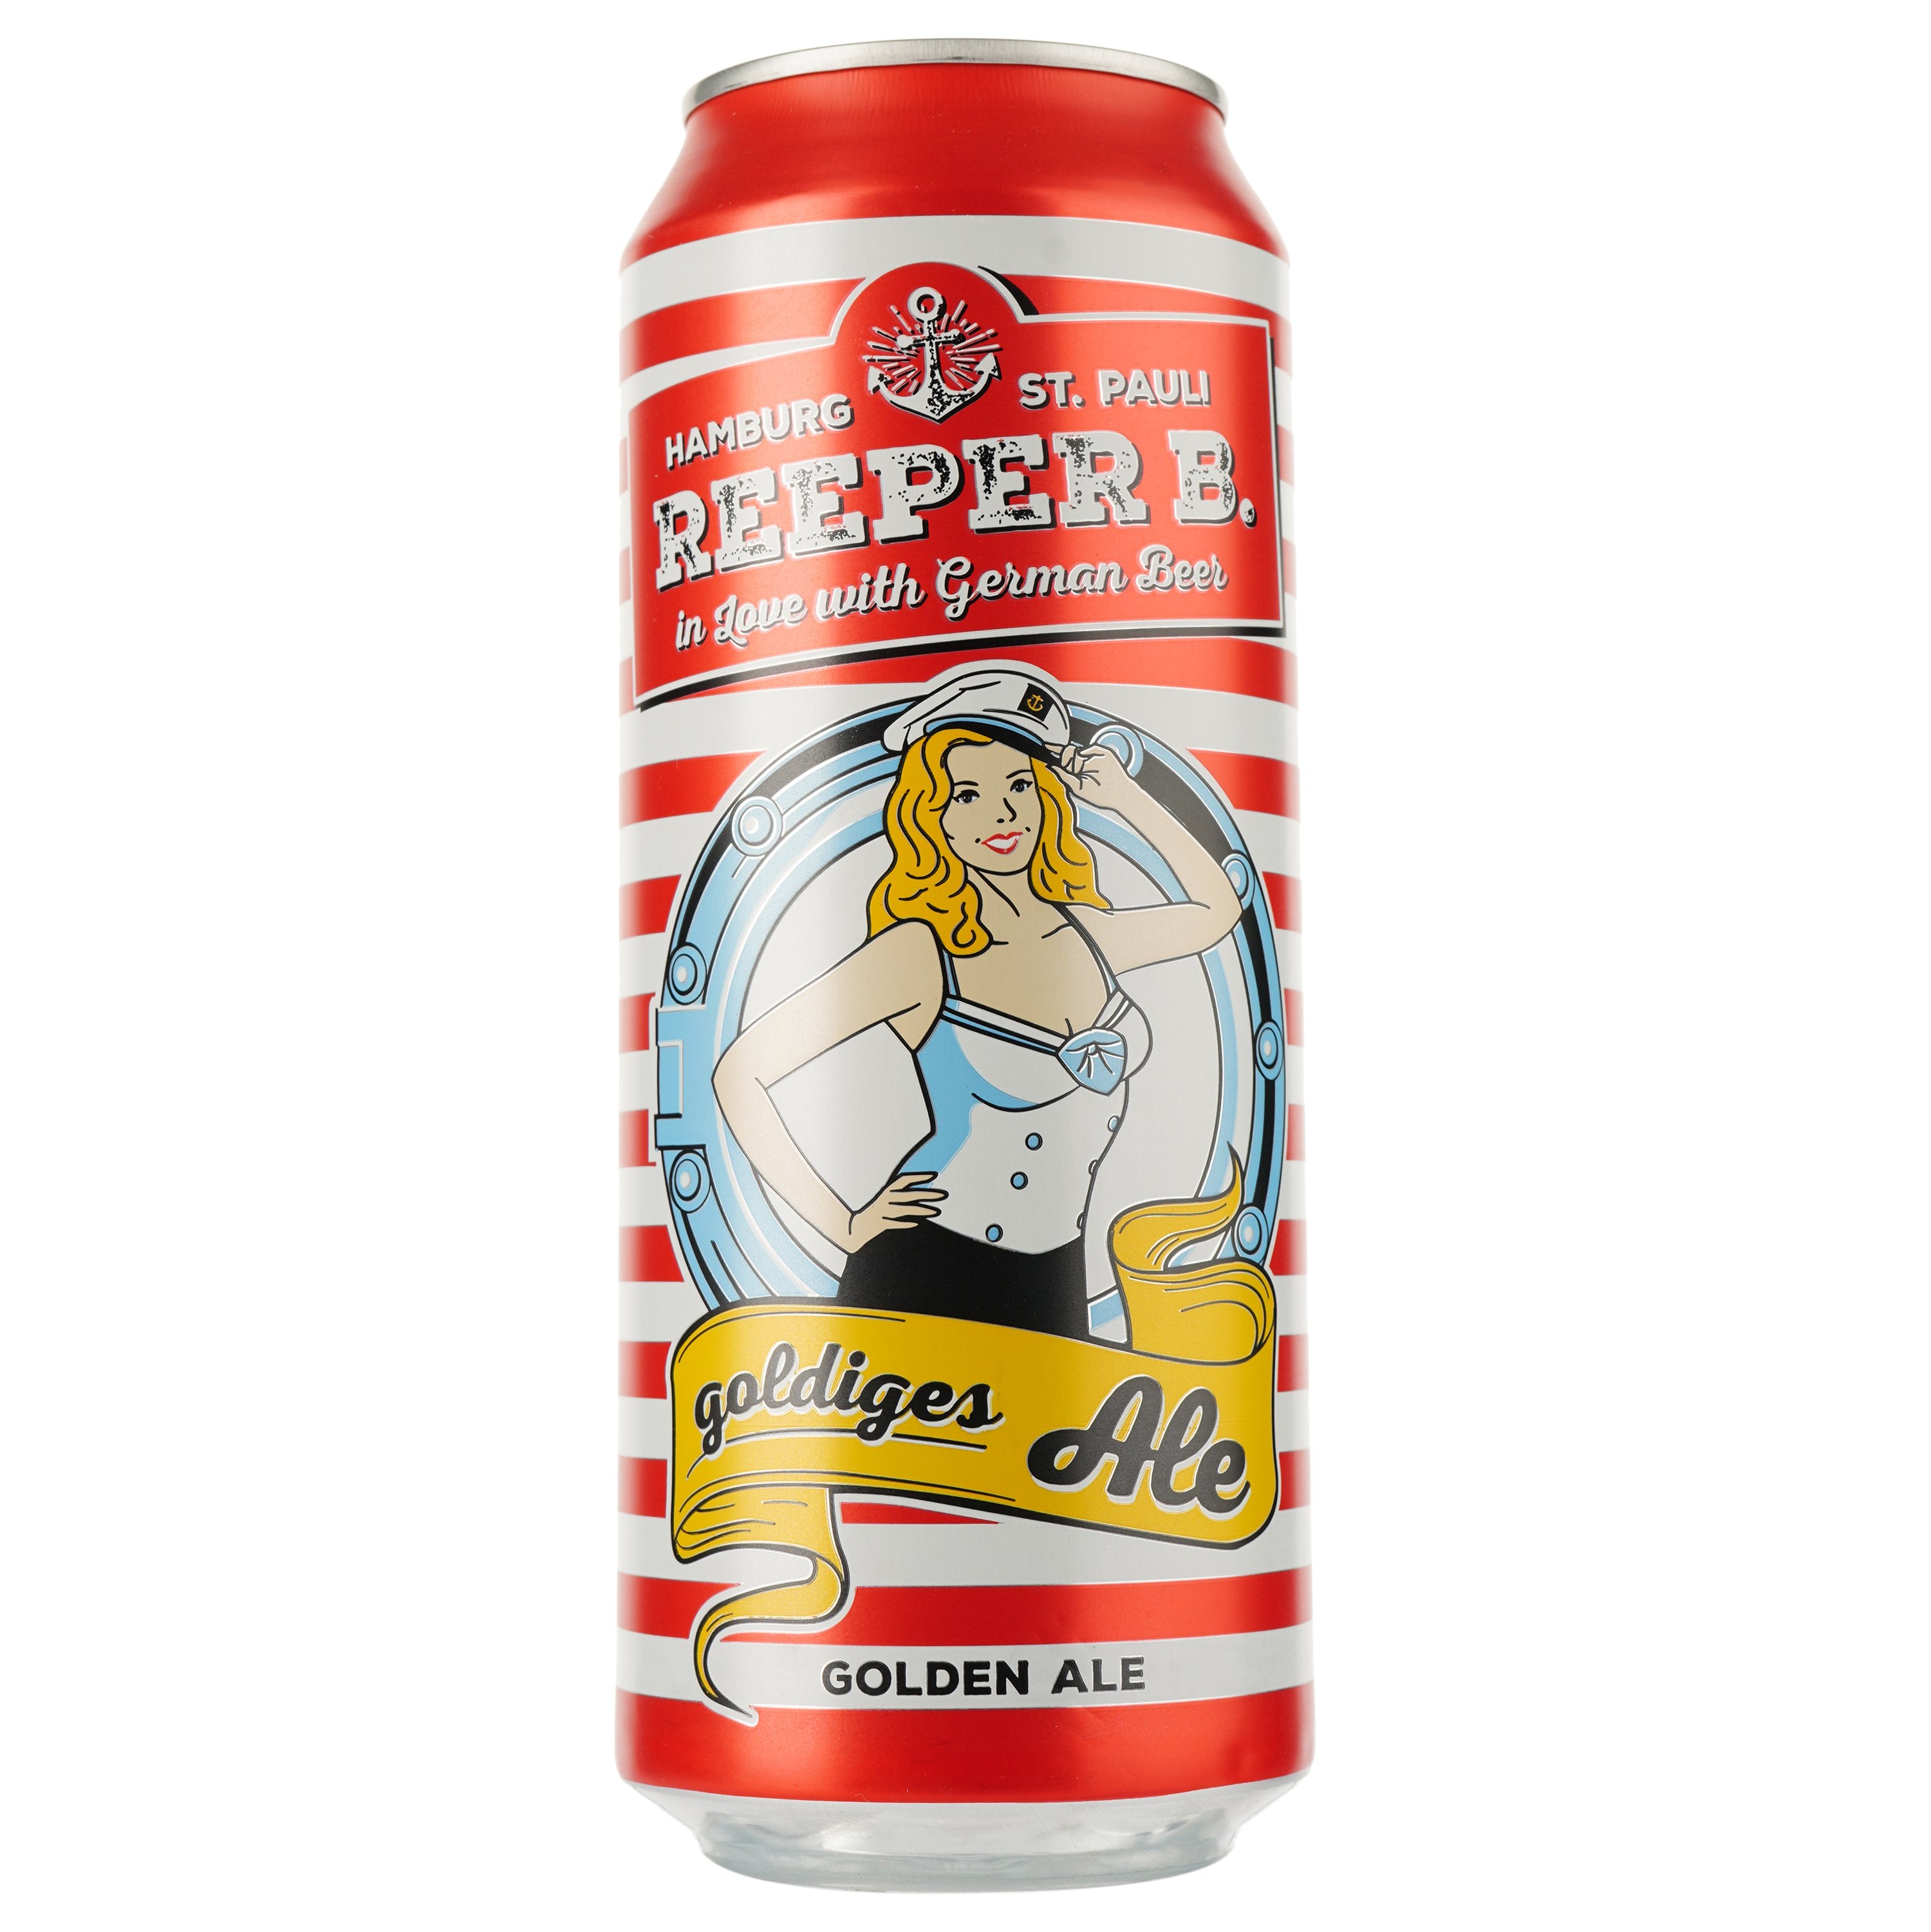 Пиво Reeper B Golden Ale, светлое, фильтрованное, 4,8%, ж/б, 0,5 л - фото 1